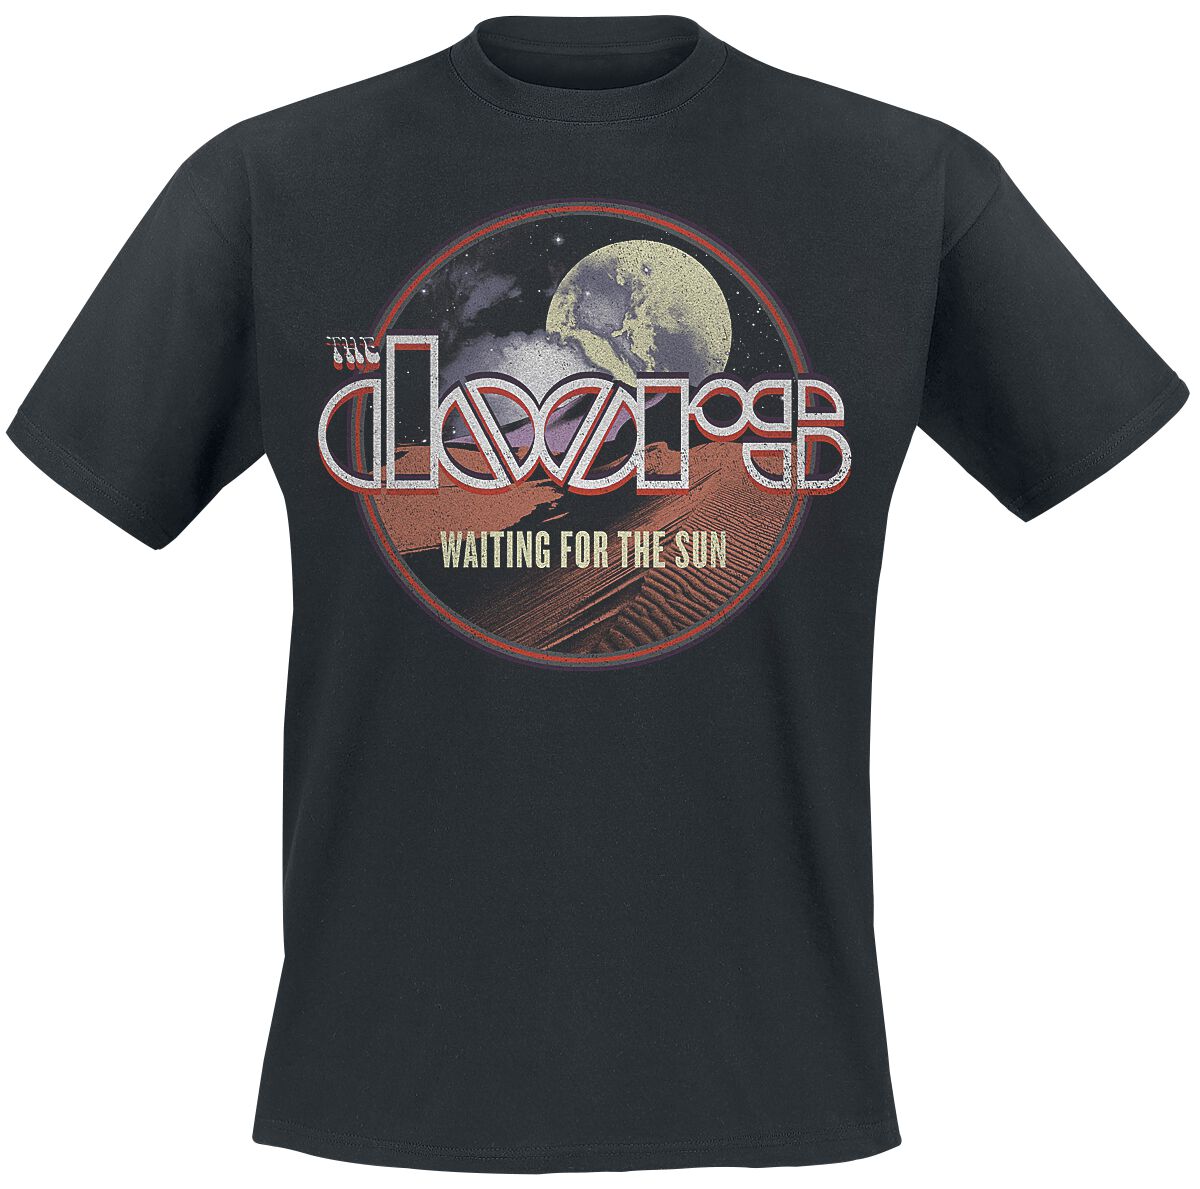 The Doors T-Shirt - Waiting For The Sun - S bis XXL - für Männer - Größe XXL - schwarz  - Lizenziertes Merchandise!